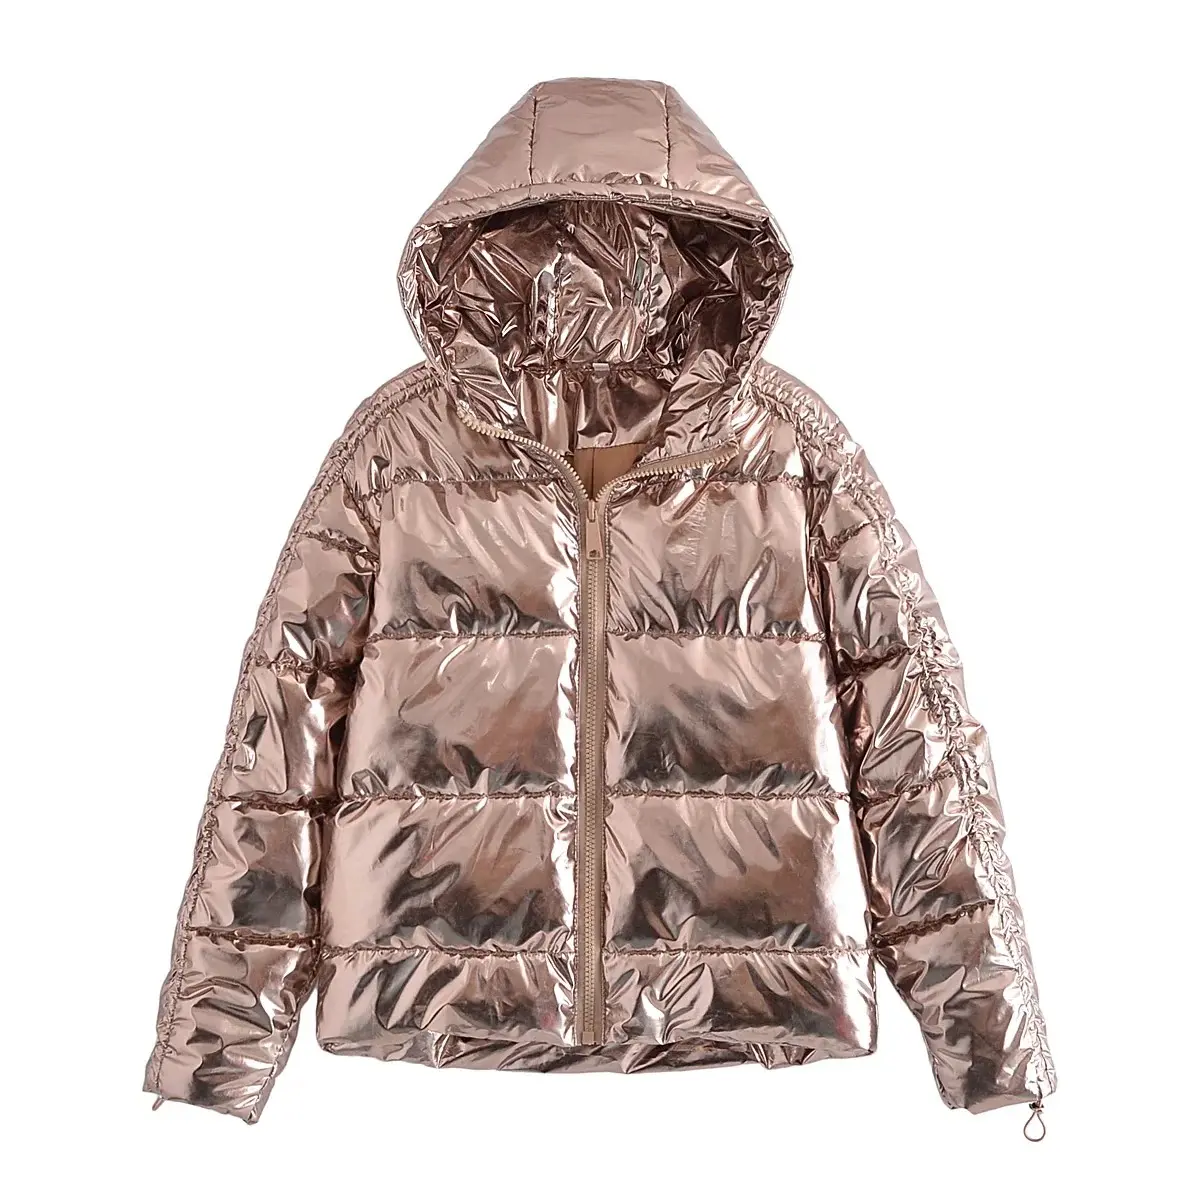 Chaqueta de invierno personalizada con burbujas cálidas para hombre, chaqueta acolchada gruesa brillante, chaqueta acolchada cálida con cremallera y manga larga metálica Unisex